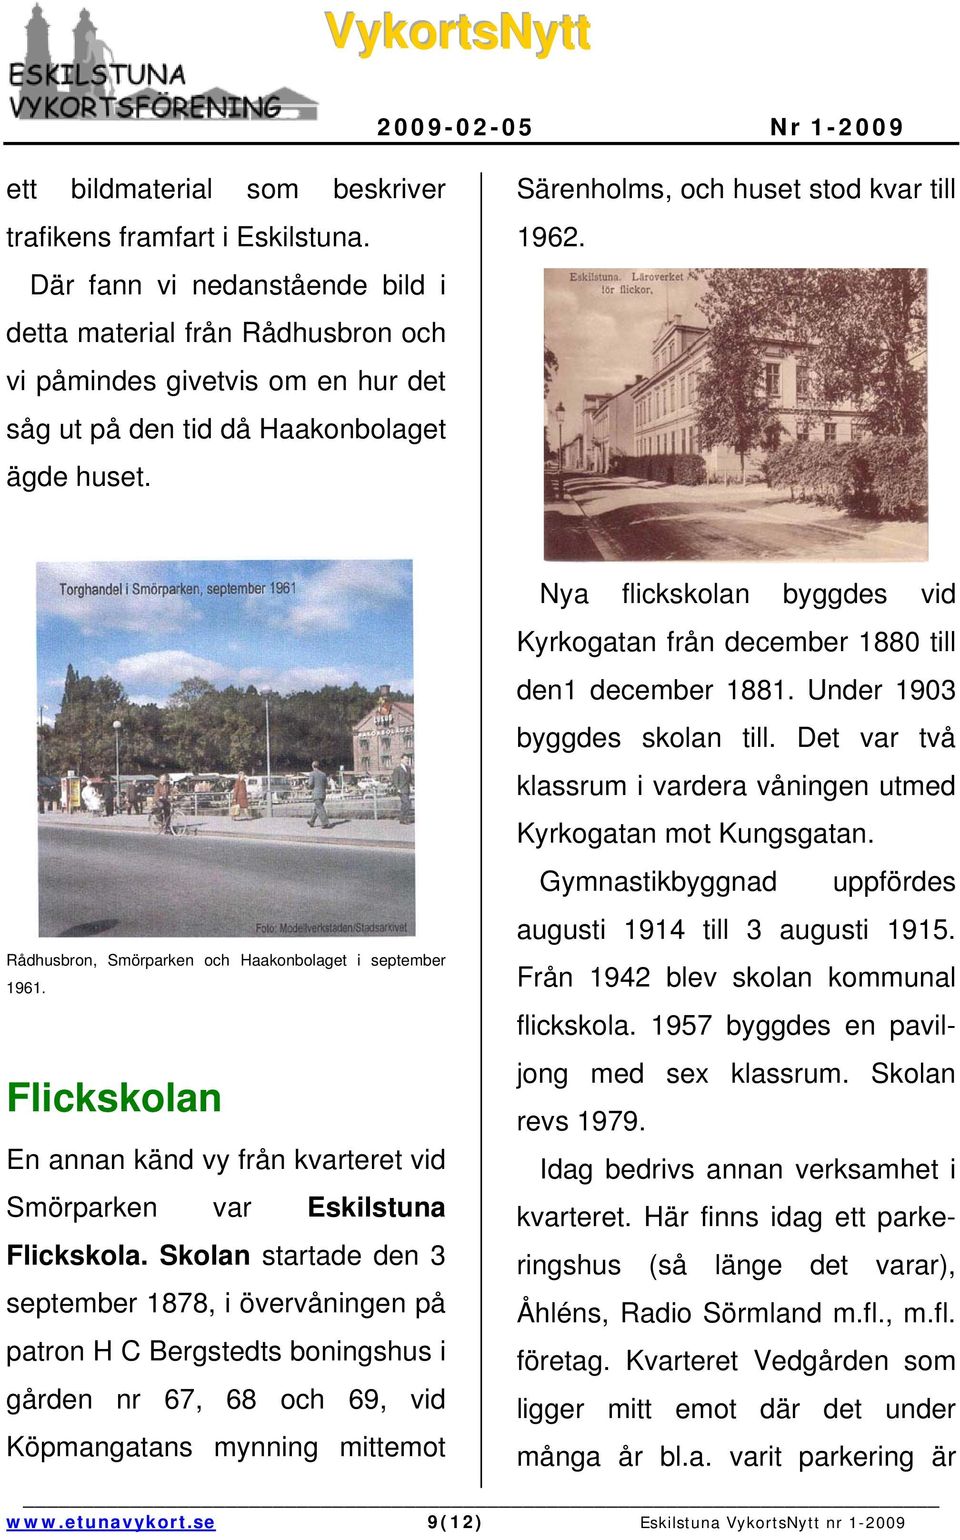 Rådhusbron, Smörparken och Haakonbolaget i september 1961. Flickskolan En annan känd vy från kvarteret vid Smörparken var Eskilstuna Flickskola.